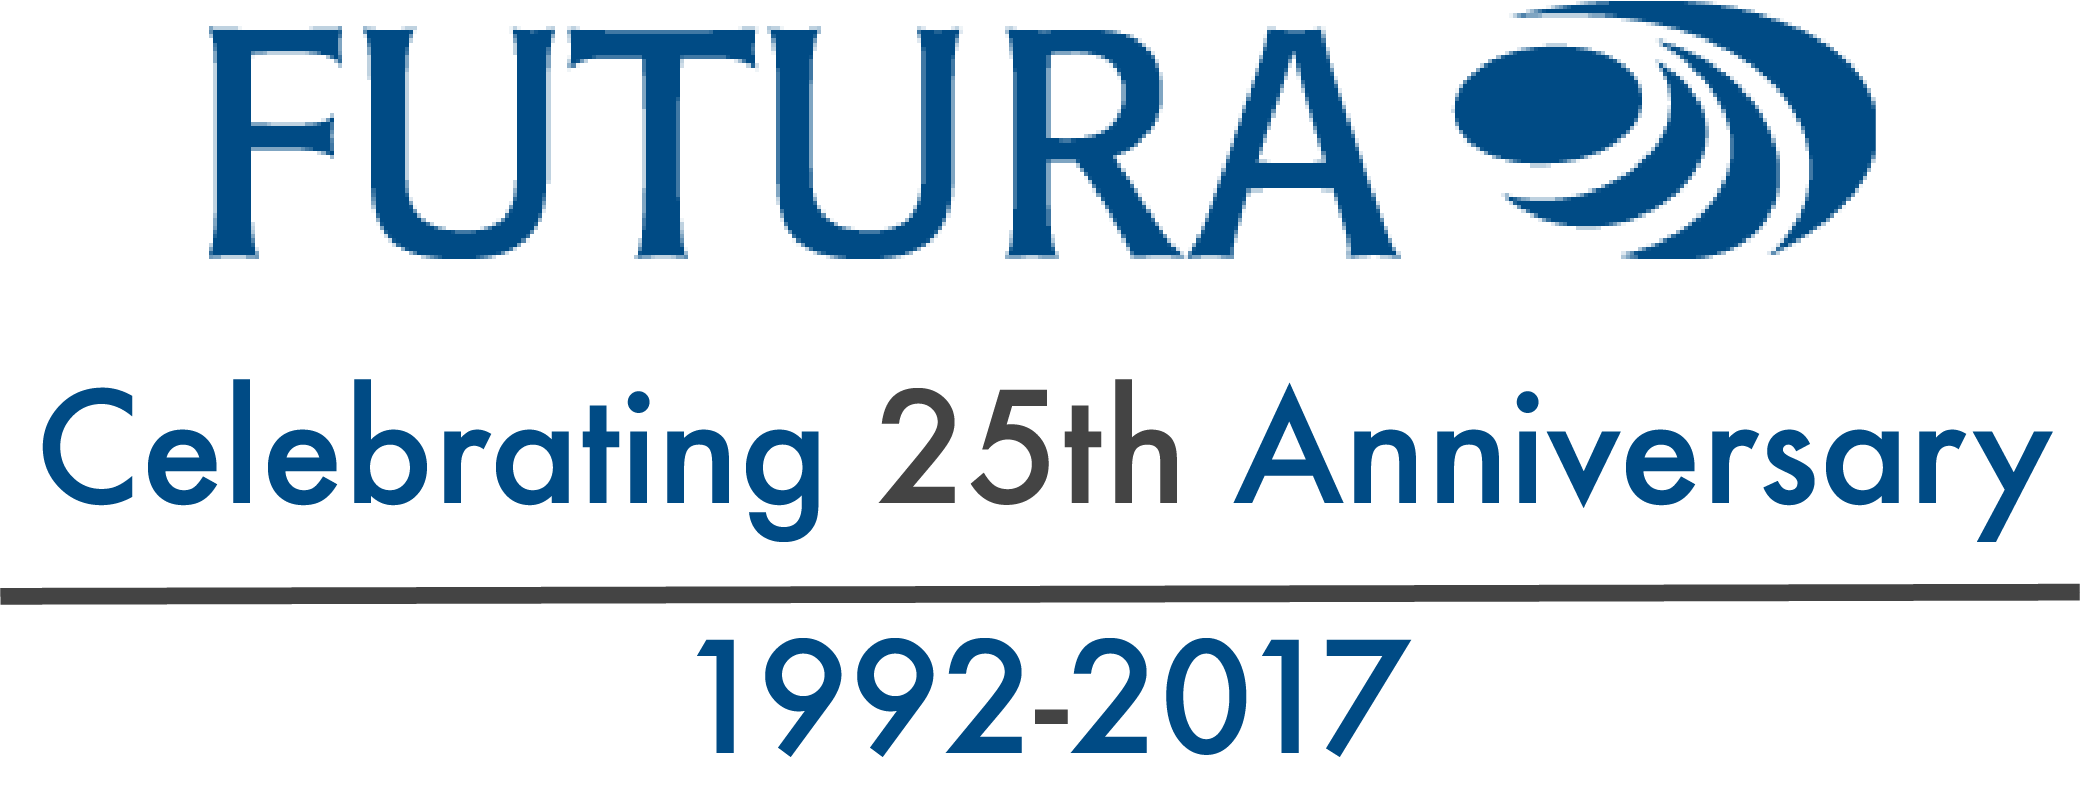 Futura Celebrating 25th Anniversary